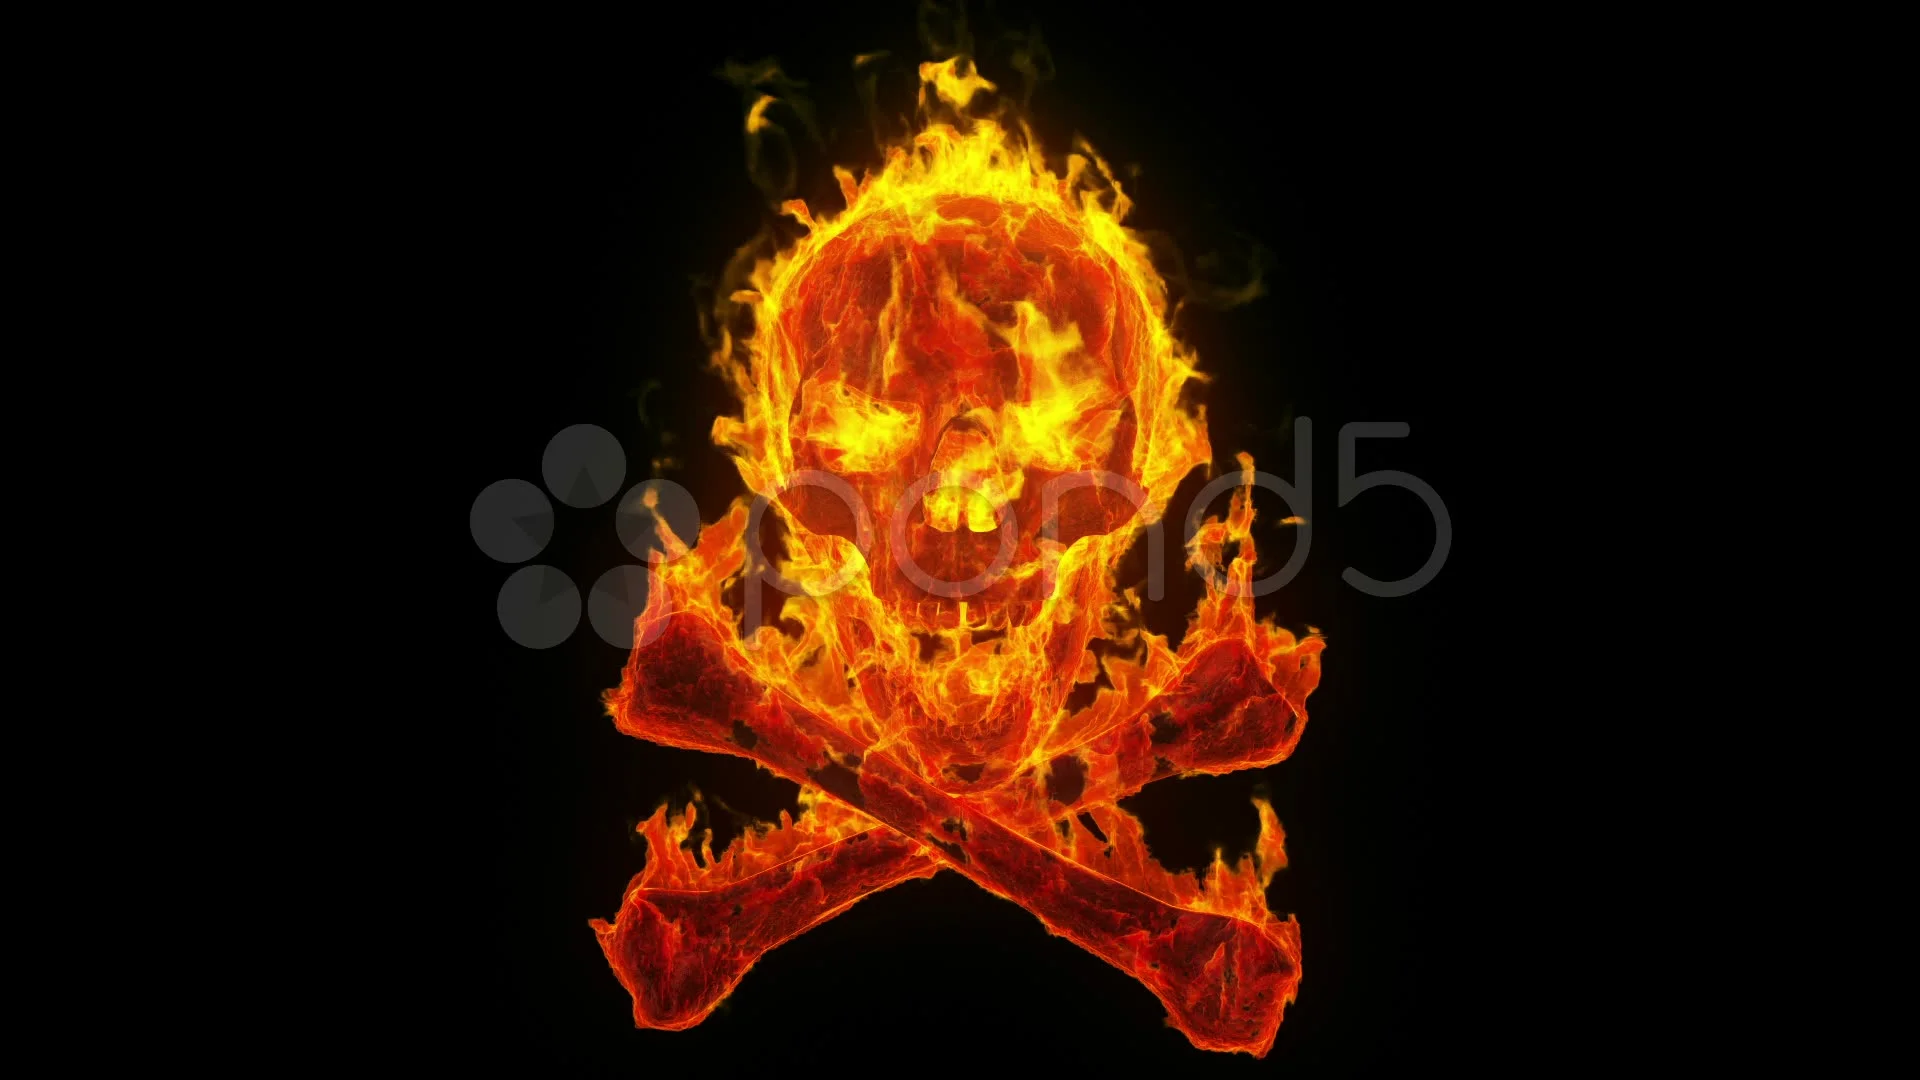 burning evil skull and crossbones